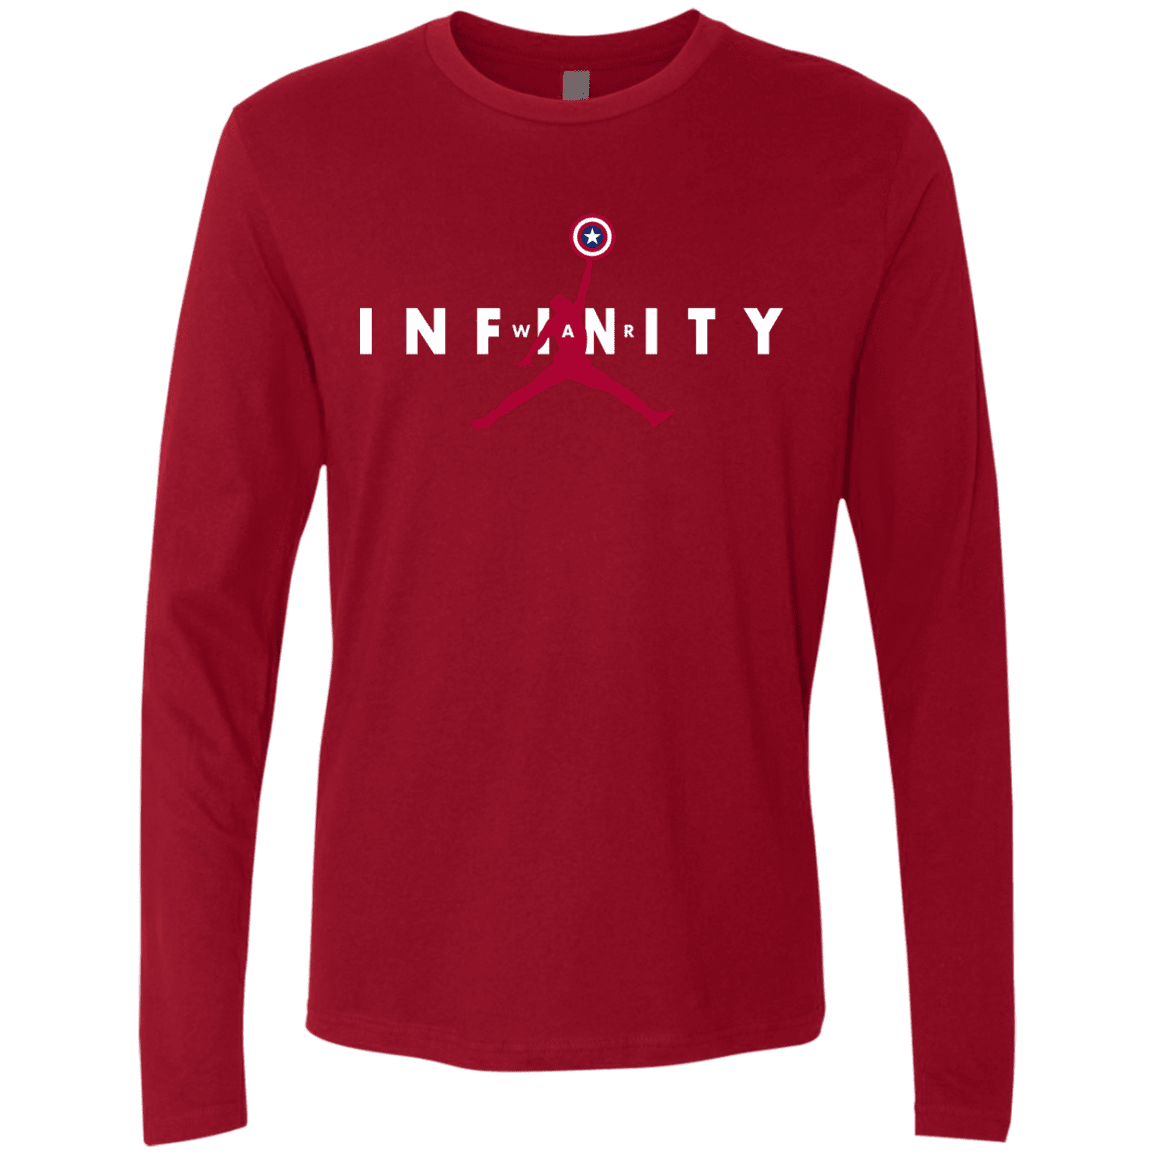 T-Shirts Cardinal / S Infinity Air Men's Premium Long Sleeve